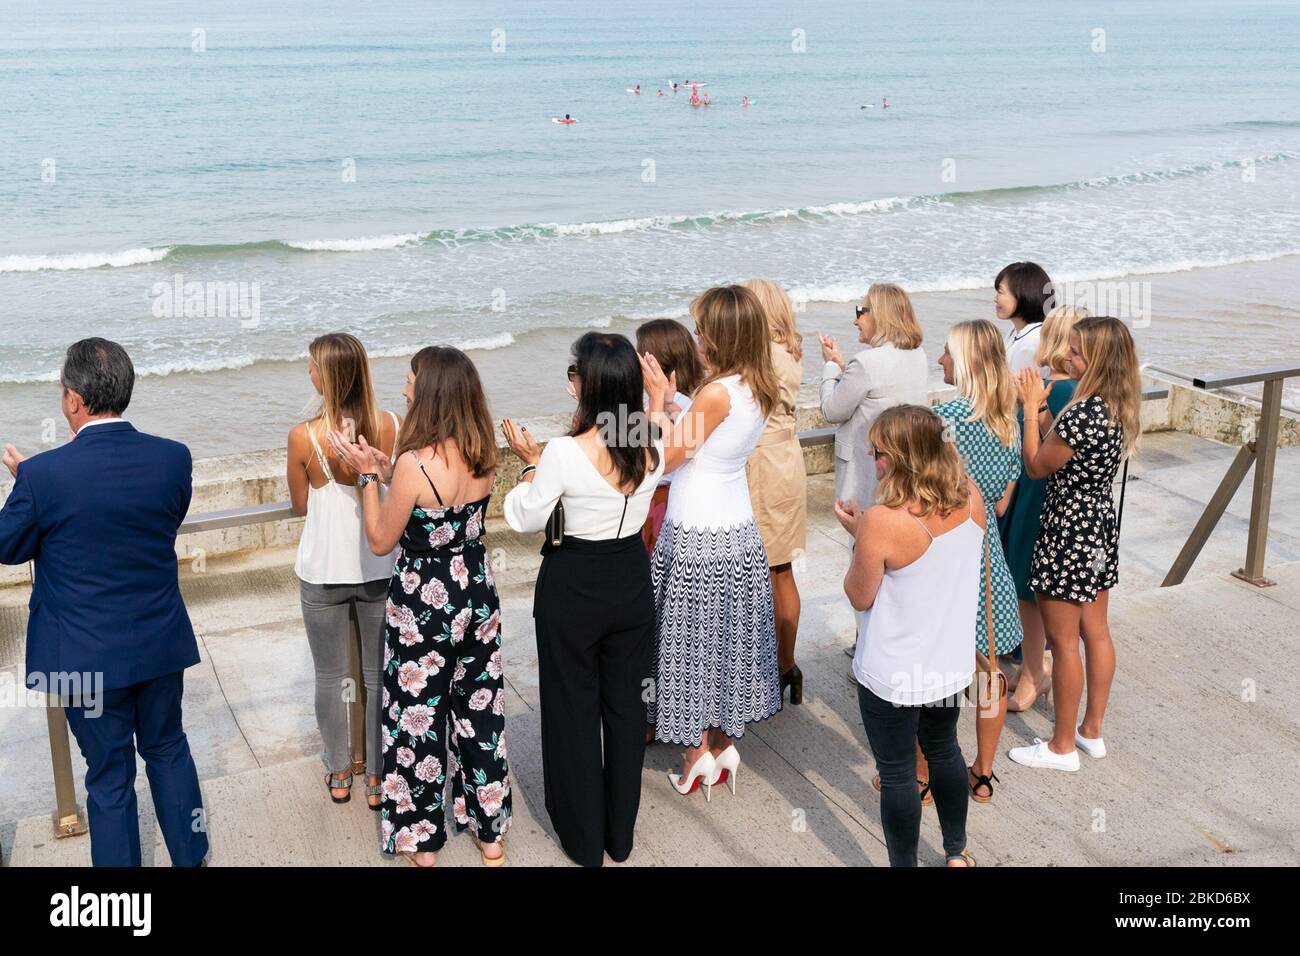 La première Dame Melania Trump, rejointe par les conjoints des dirigeants du G-7 et des athlètes et musiciens locaux, applaudit lors d'une manifestation de jeunes surfeurs lundi 26 août 2019, à la plage des Côtes des Basques de Biarritz, France. #G7Biarritz Banque D'Images